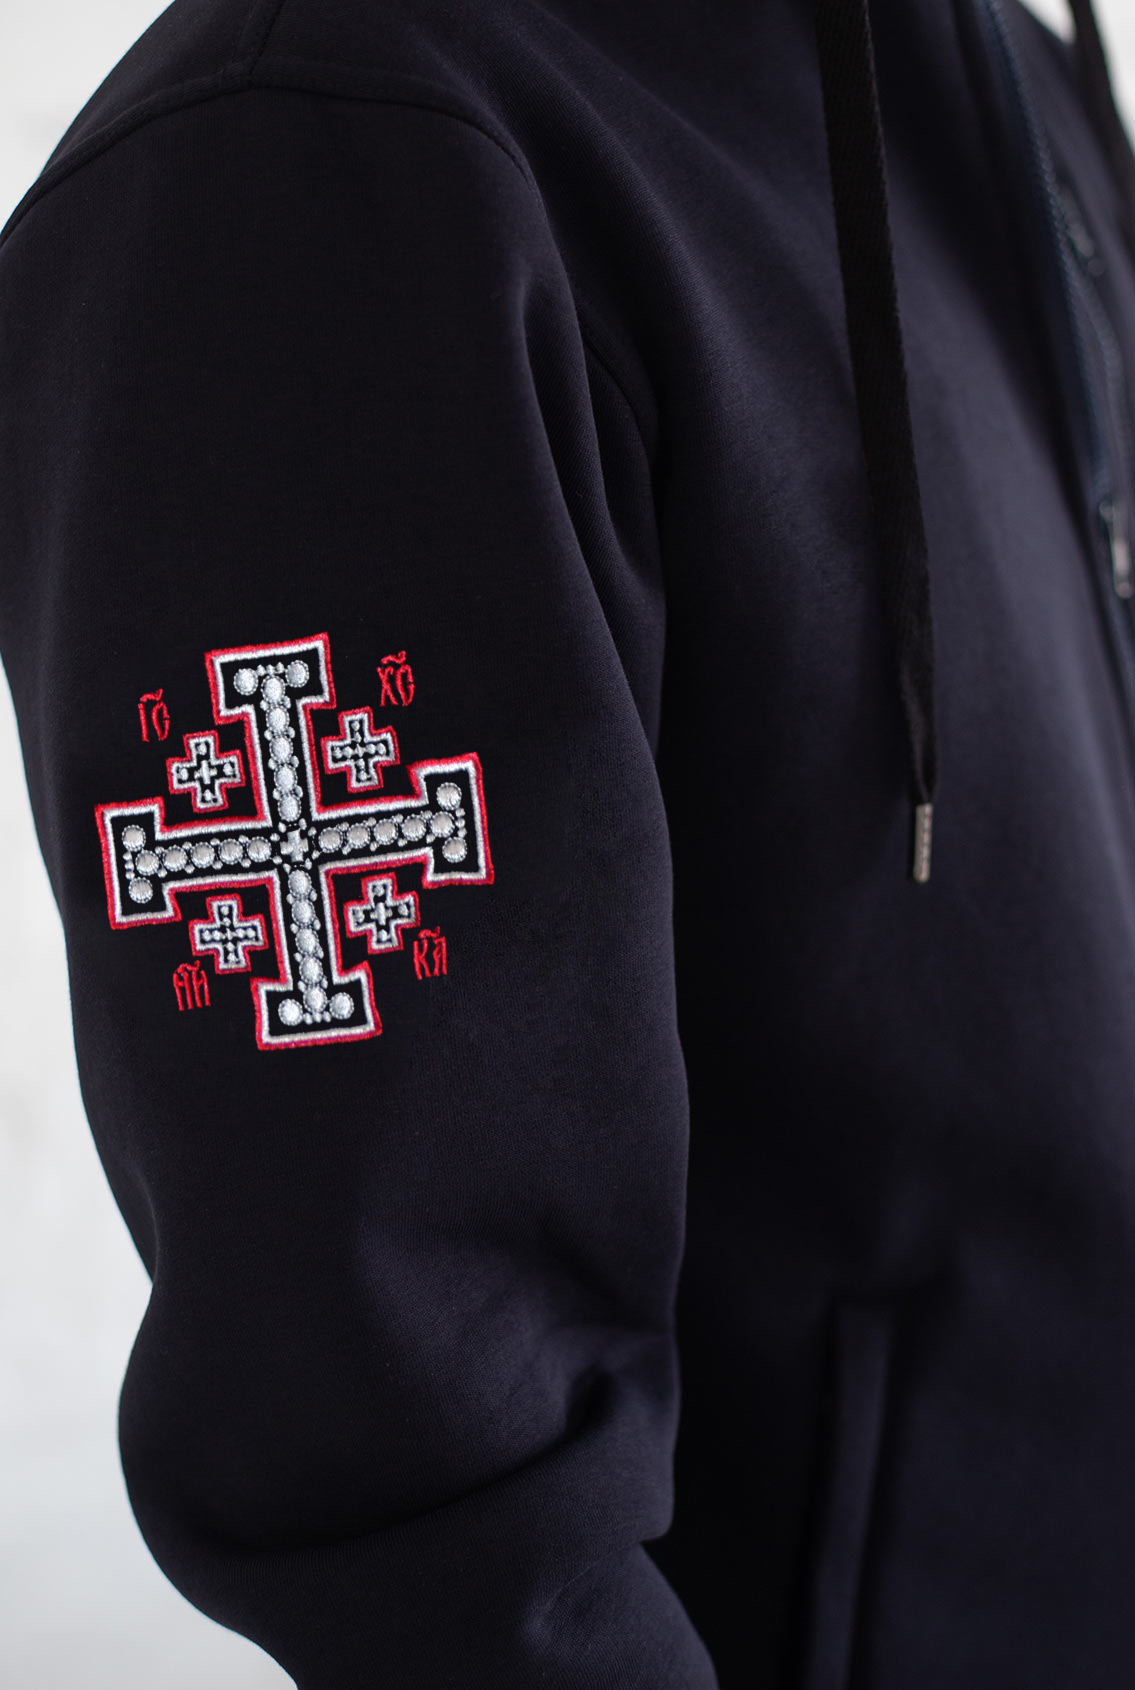 Cross on sweatshirt